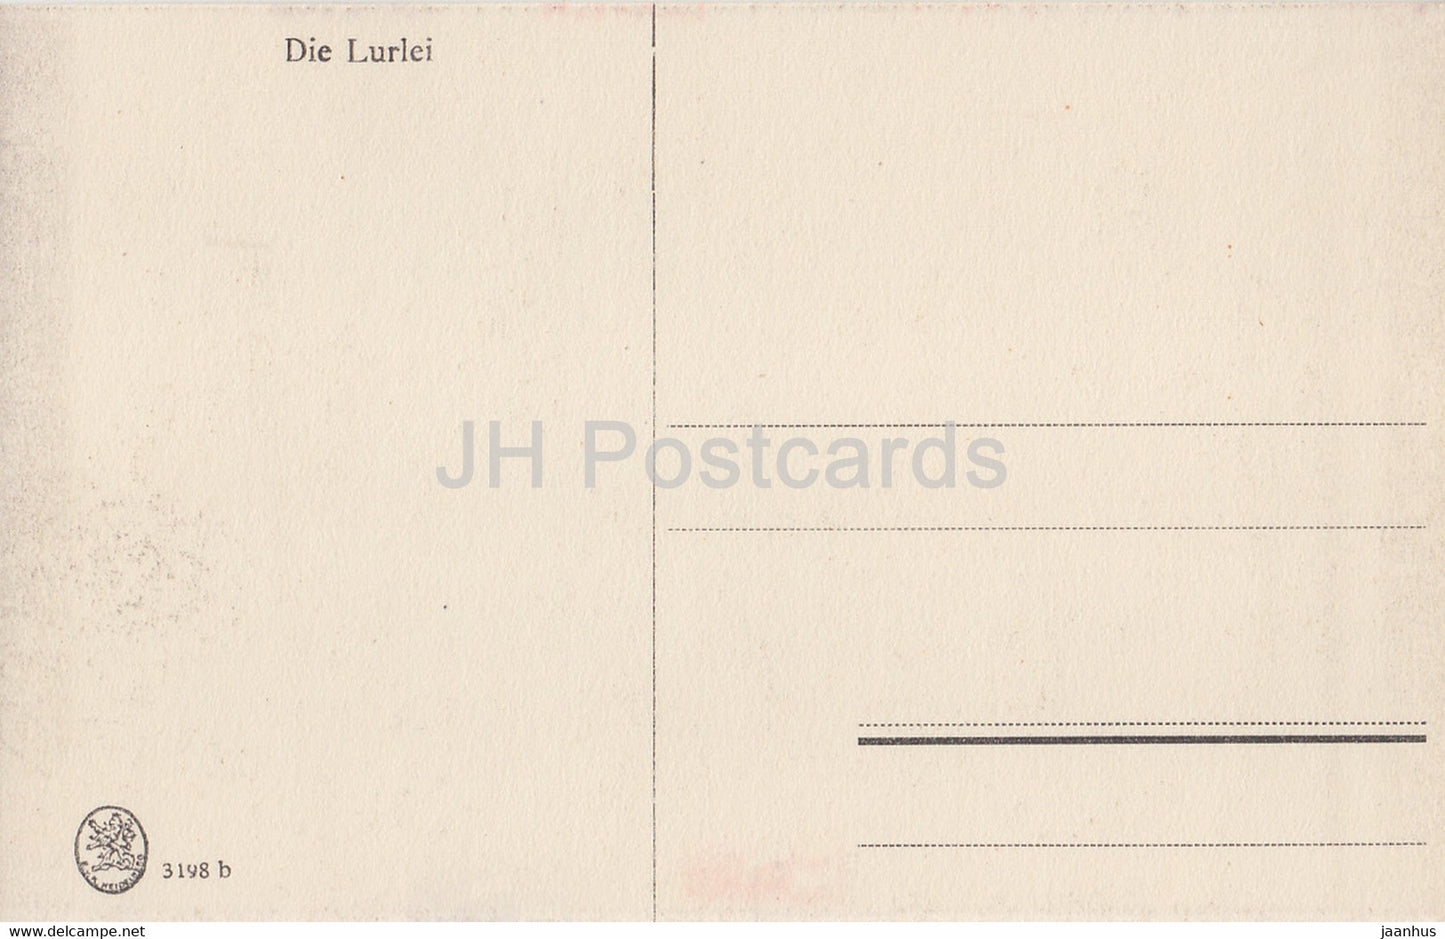 Die Lurlei - Schiff - Dampfer - 3198 - alte Postkarte - Deutschland - unbenutzt